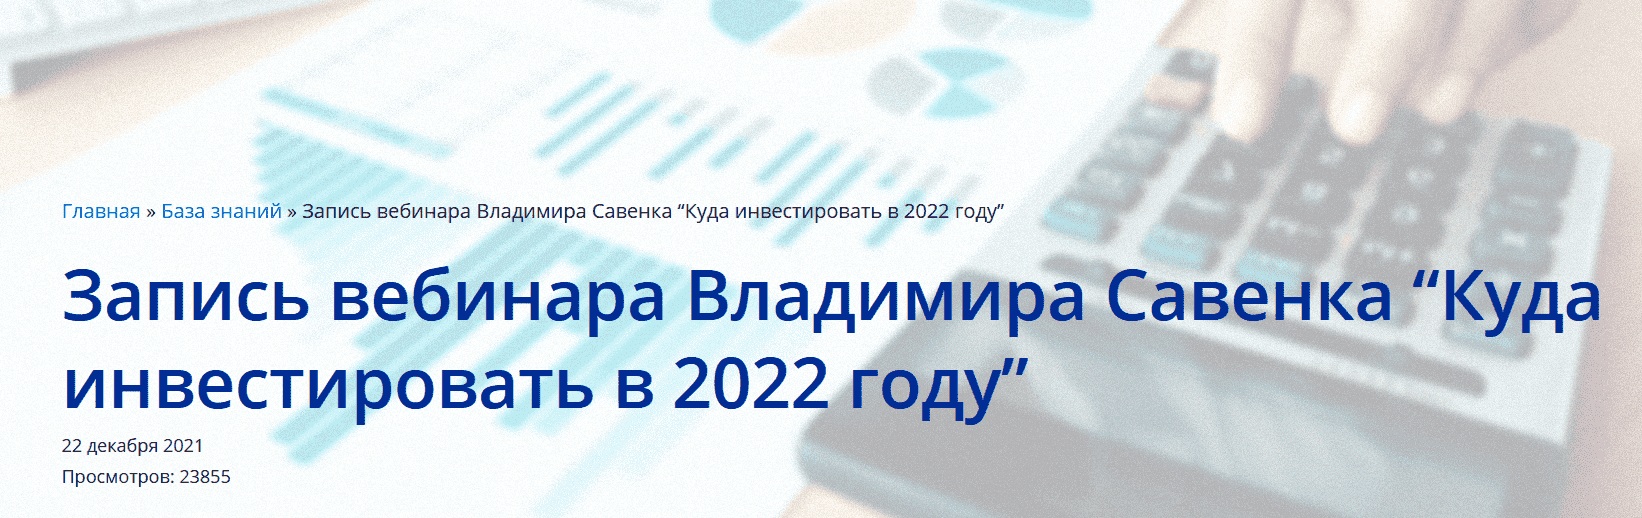 Скачать - Владимир Савенок. Куда инвестировать в 2022 (2021).png